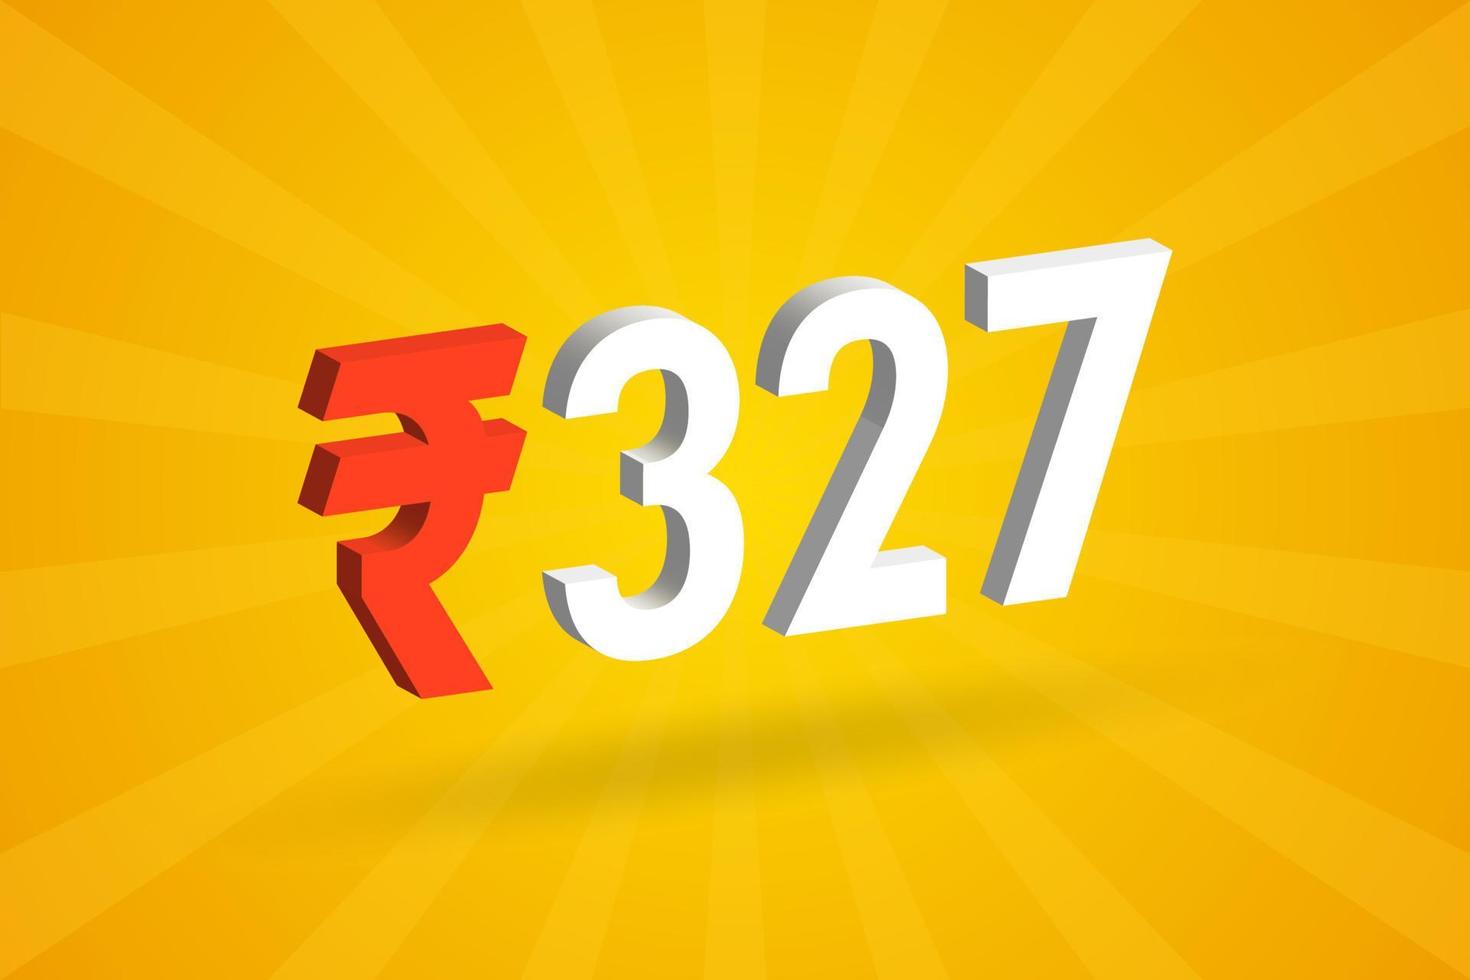 327 rupia símbolo 3d imagem de vetor de texto em negrito. 3d 327 rupia indiana ilustração vetorial de sinal de moeda